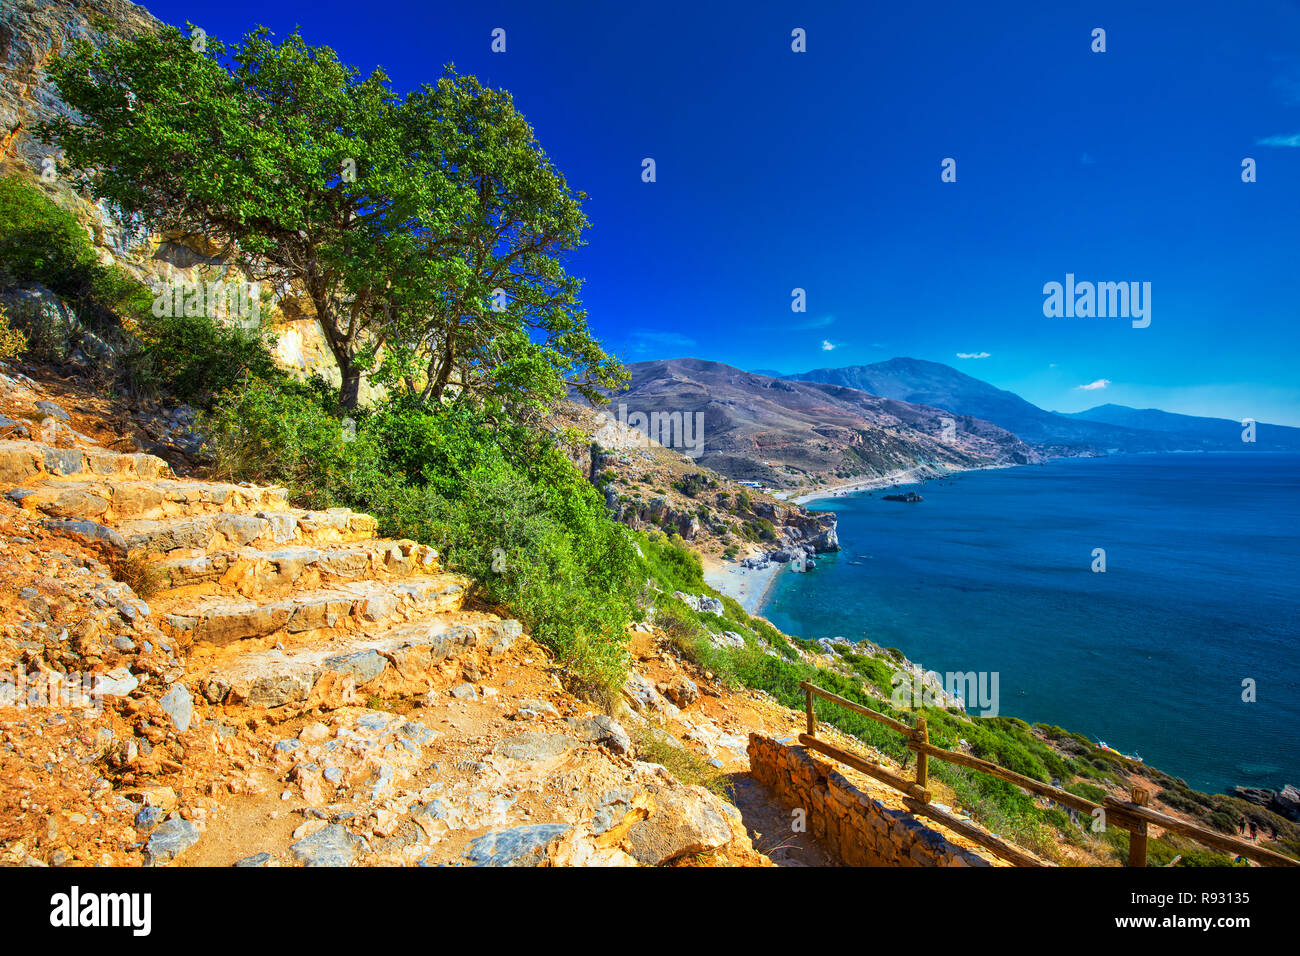 Preveli Strand auf der Insel Kreta mit azurblauen Wasser, Griechenland, Europa. Kreta ist die größte und bevölkerungsreichste der griechischen Inseln. Stockfoto